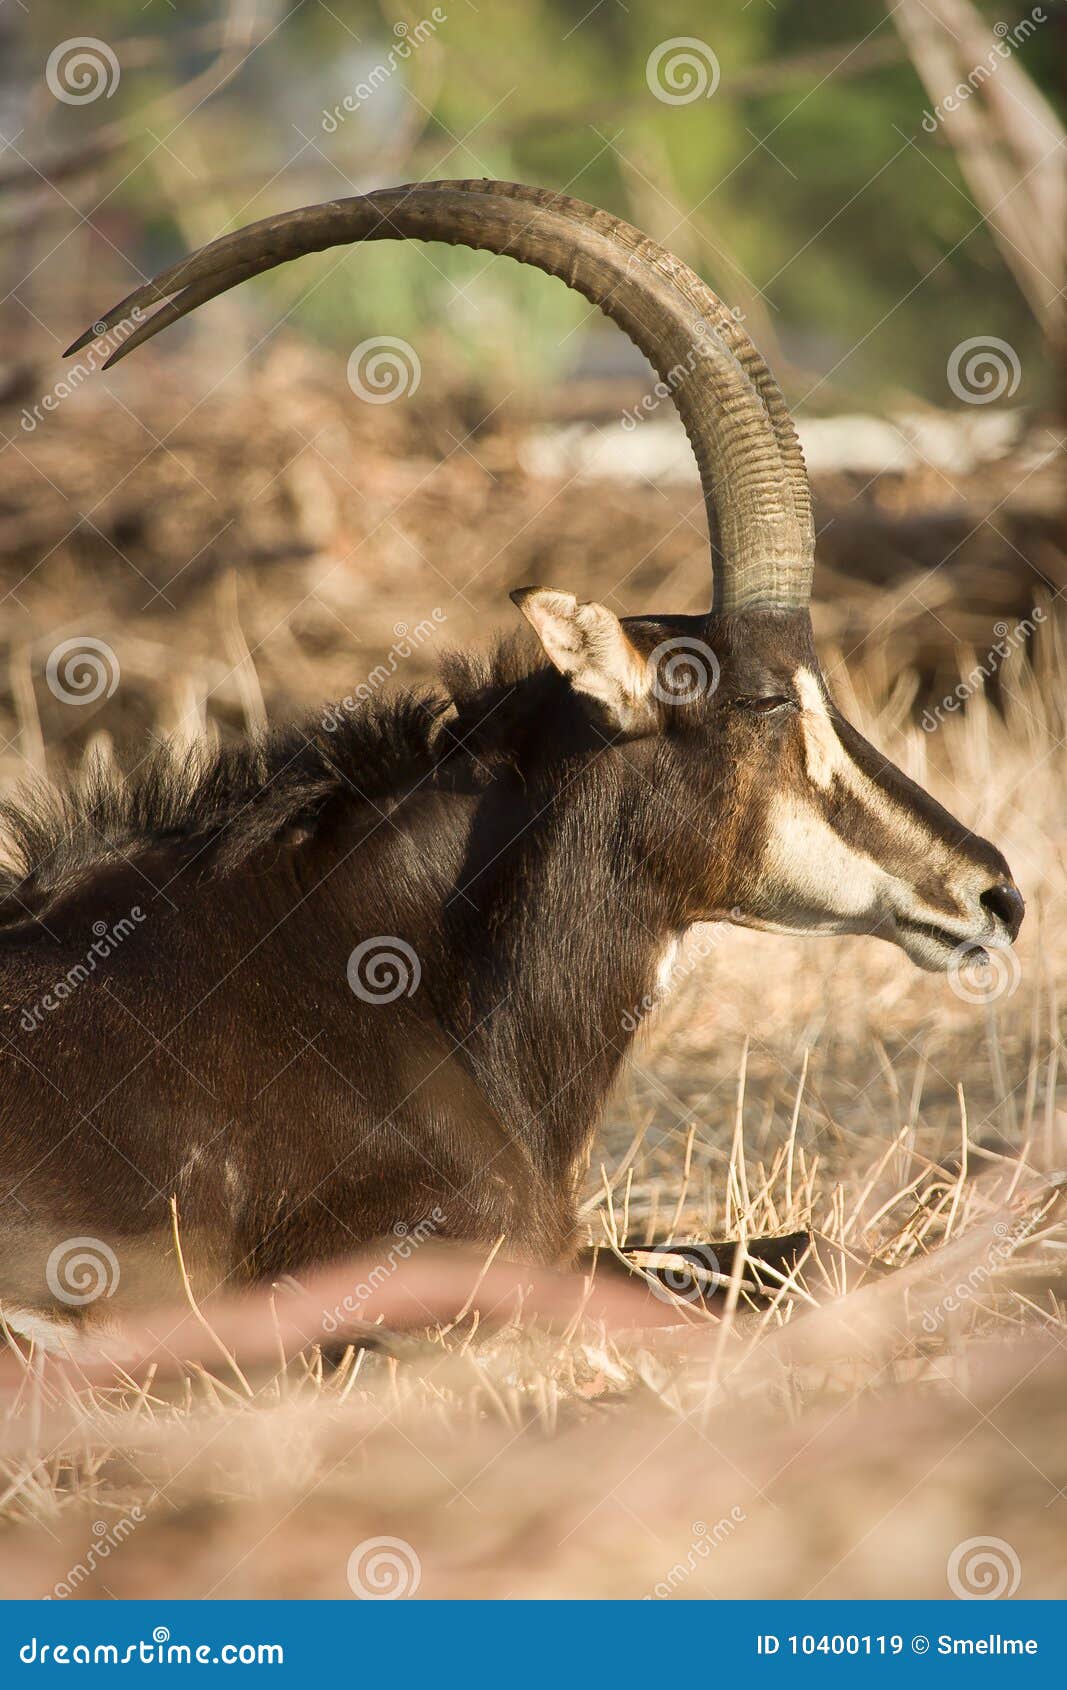 sable antelope